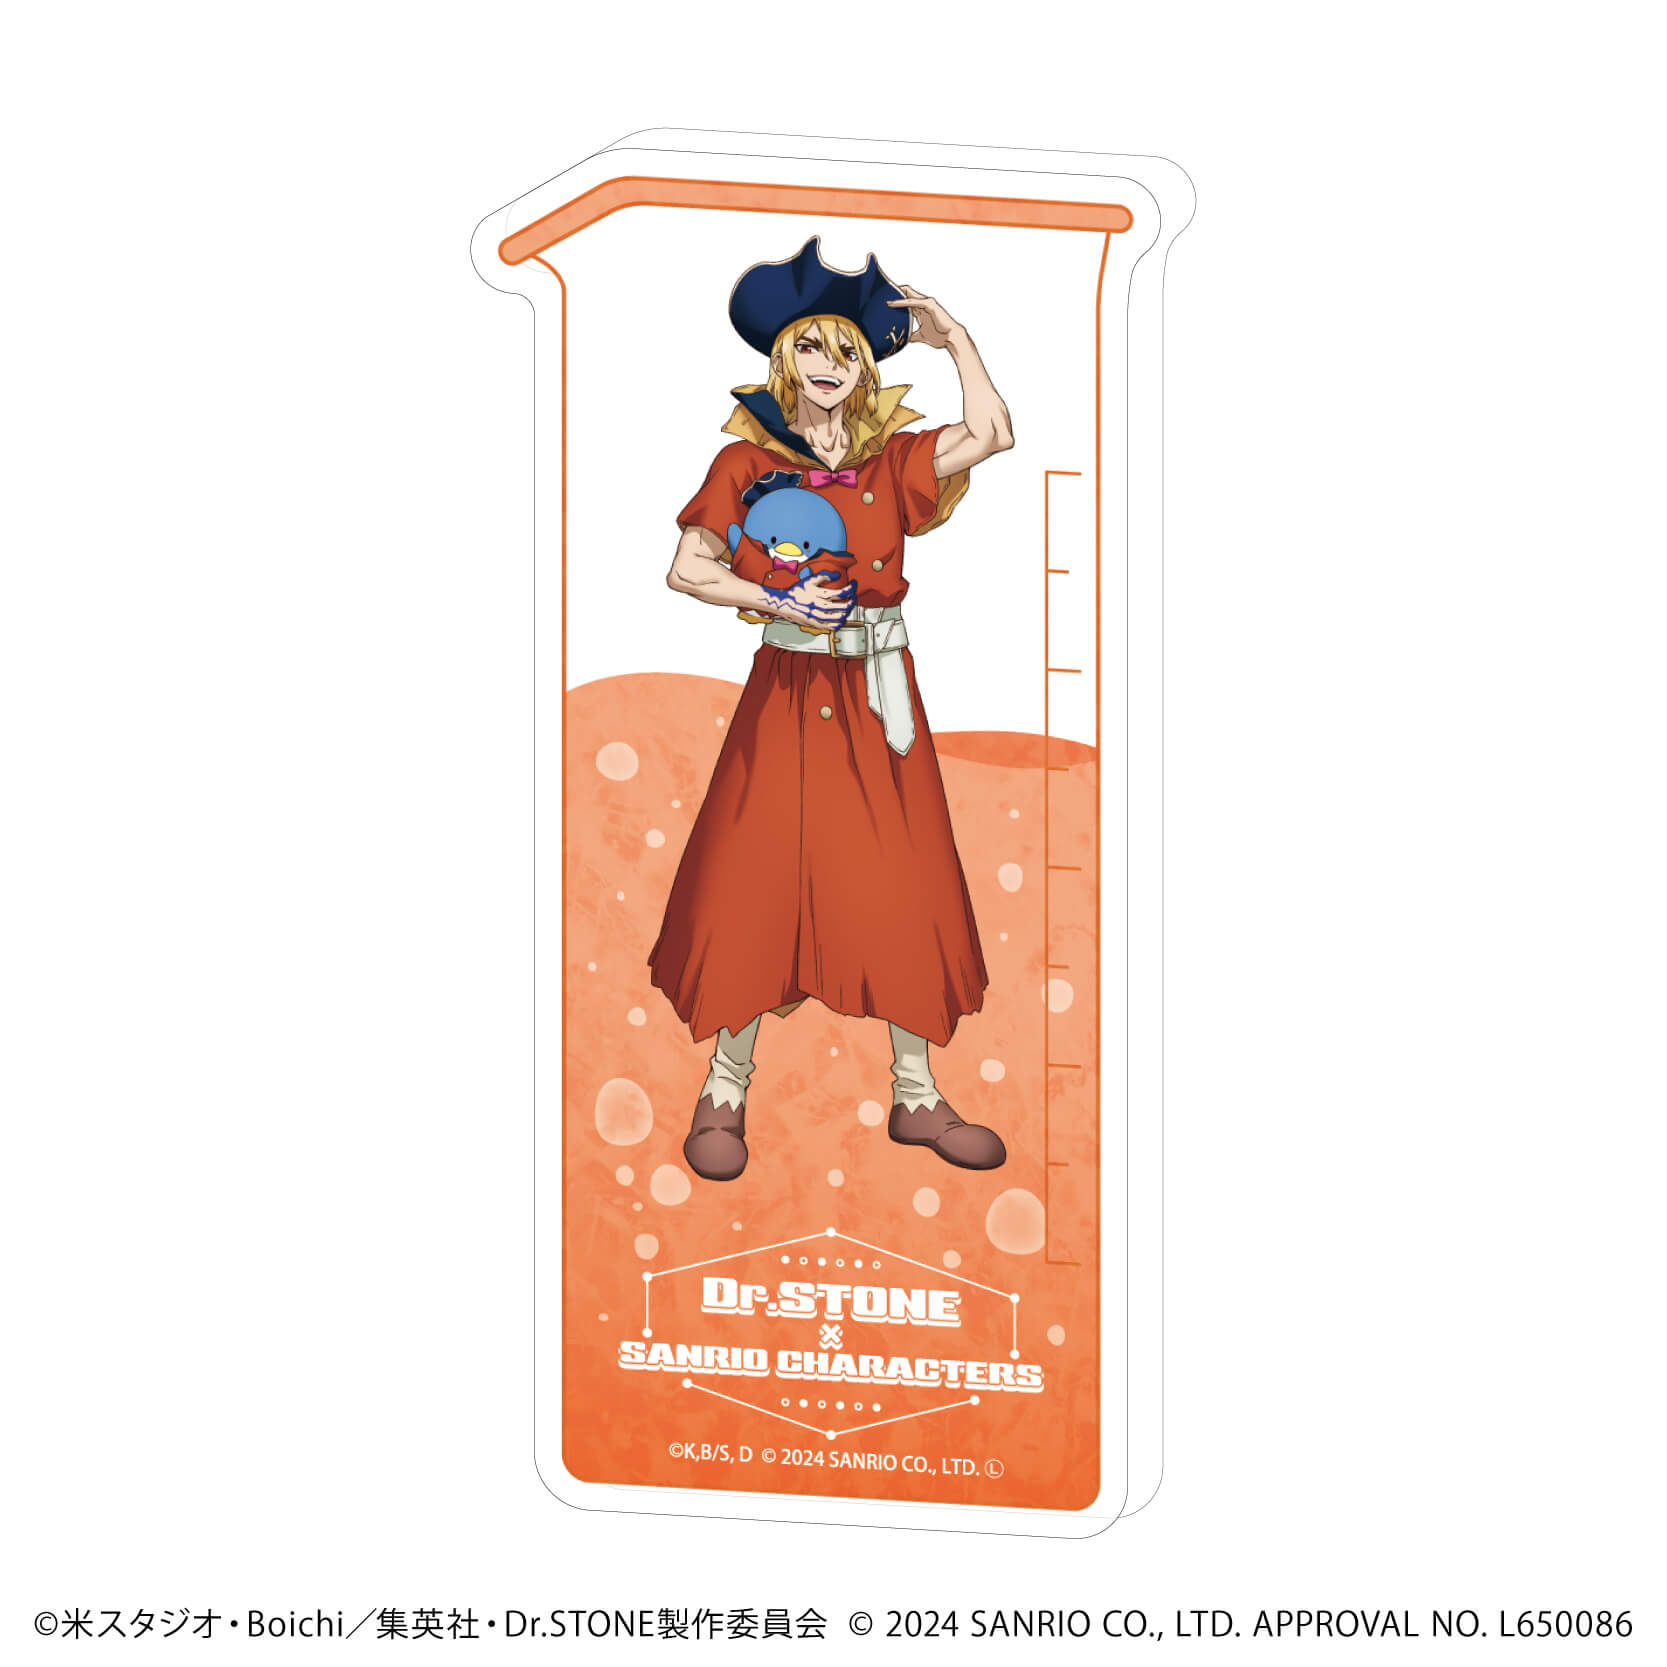 コレクションボトル「Dr.STONE×サンリオキャラクターズ」14/龍水×タキシードサム(コラボイラスト)